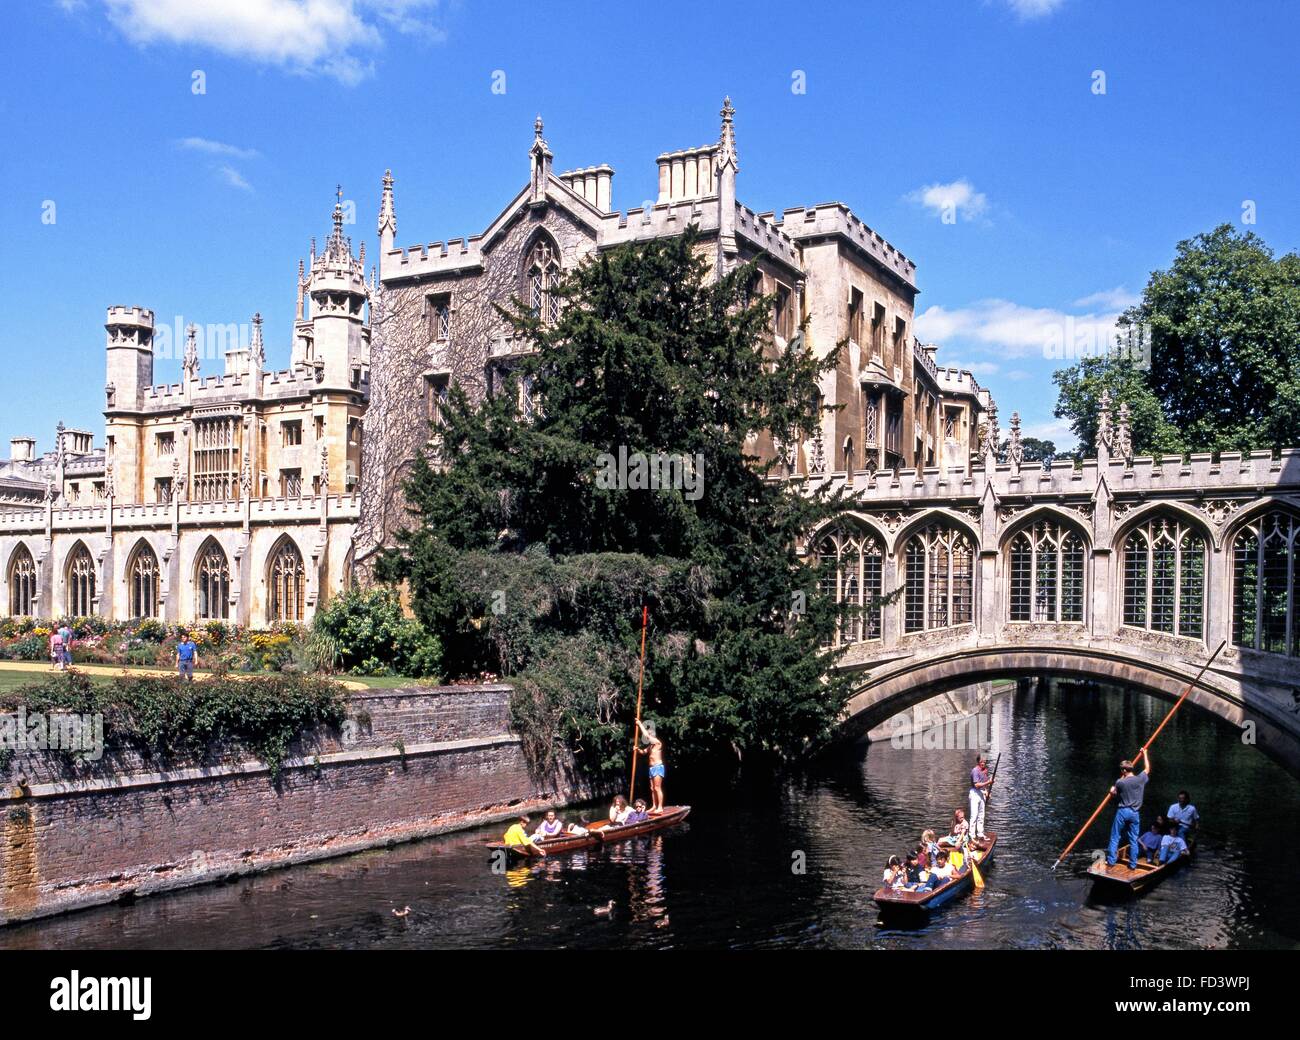 Plates naviguant sous le Pont des Soupirs sur la rivière Cam à St John's College, Cambridge, Cambridgeshire, Angleterre, Royaume-Uni. Banque D'Images